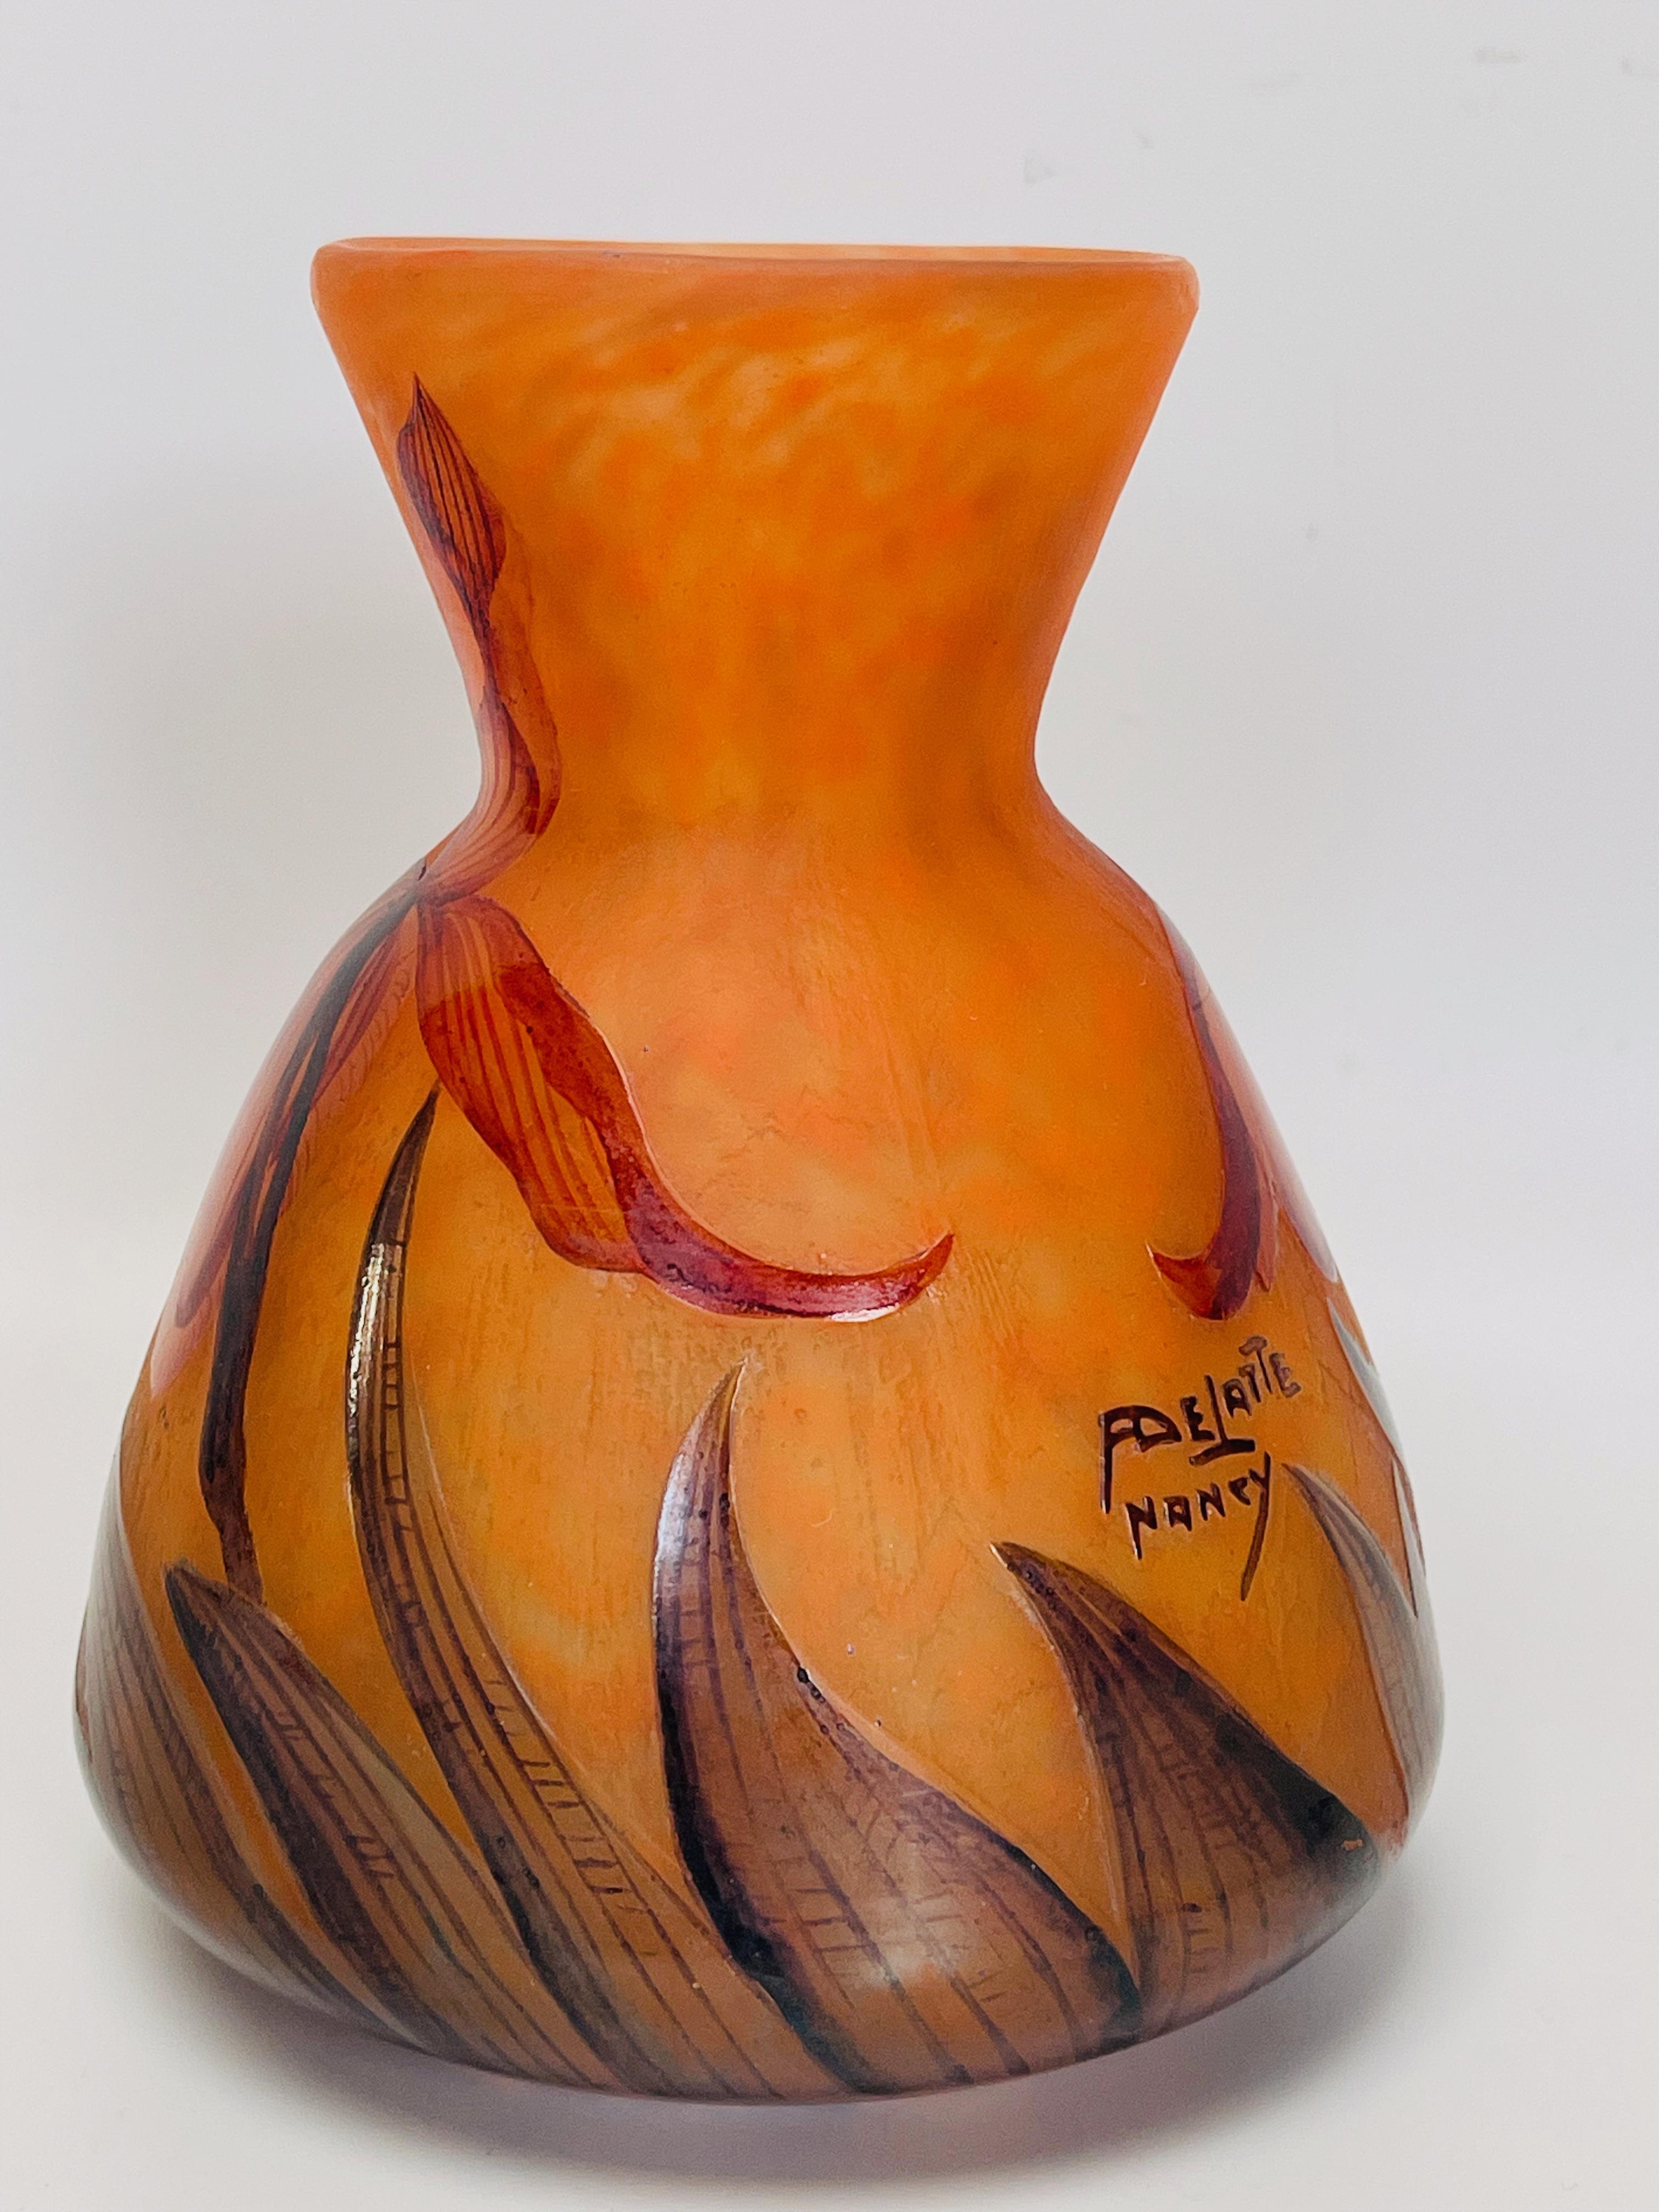 Vase en pâte de verre émaillé et gravé à l'acide avec un décor d'iris.
 Signé À.Delatte.
 En parfait état.

Diamètre : 11,5 cm
Hauteur : 14 cm
Poids : 600 g